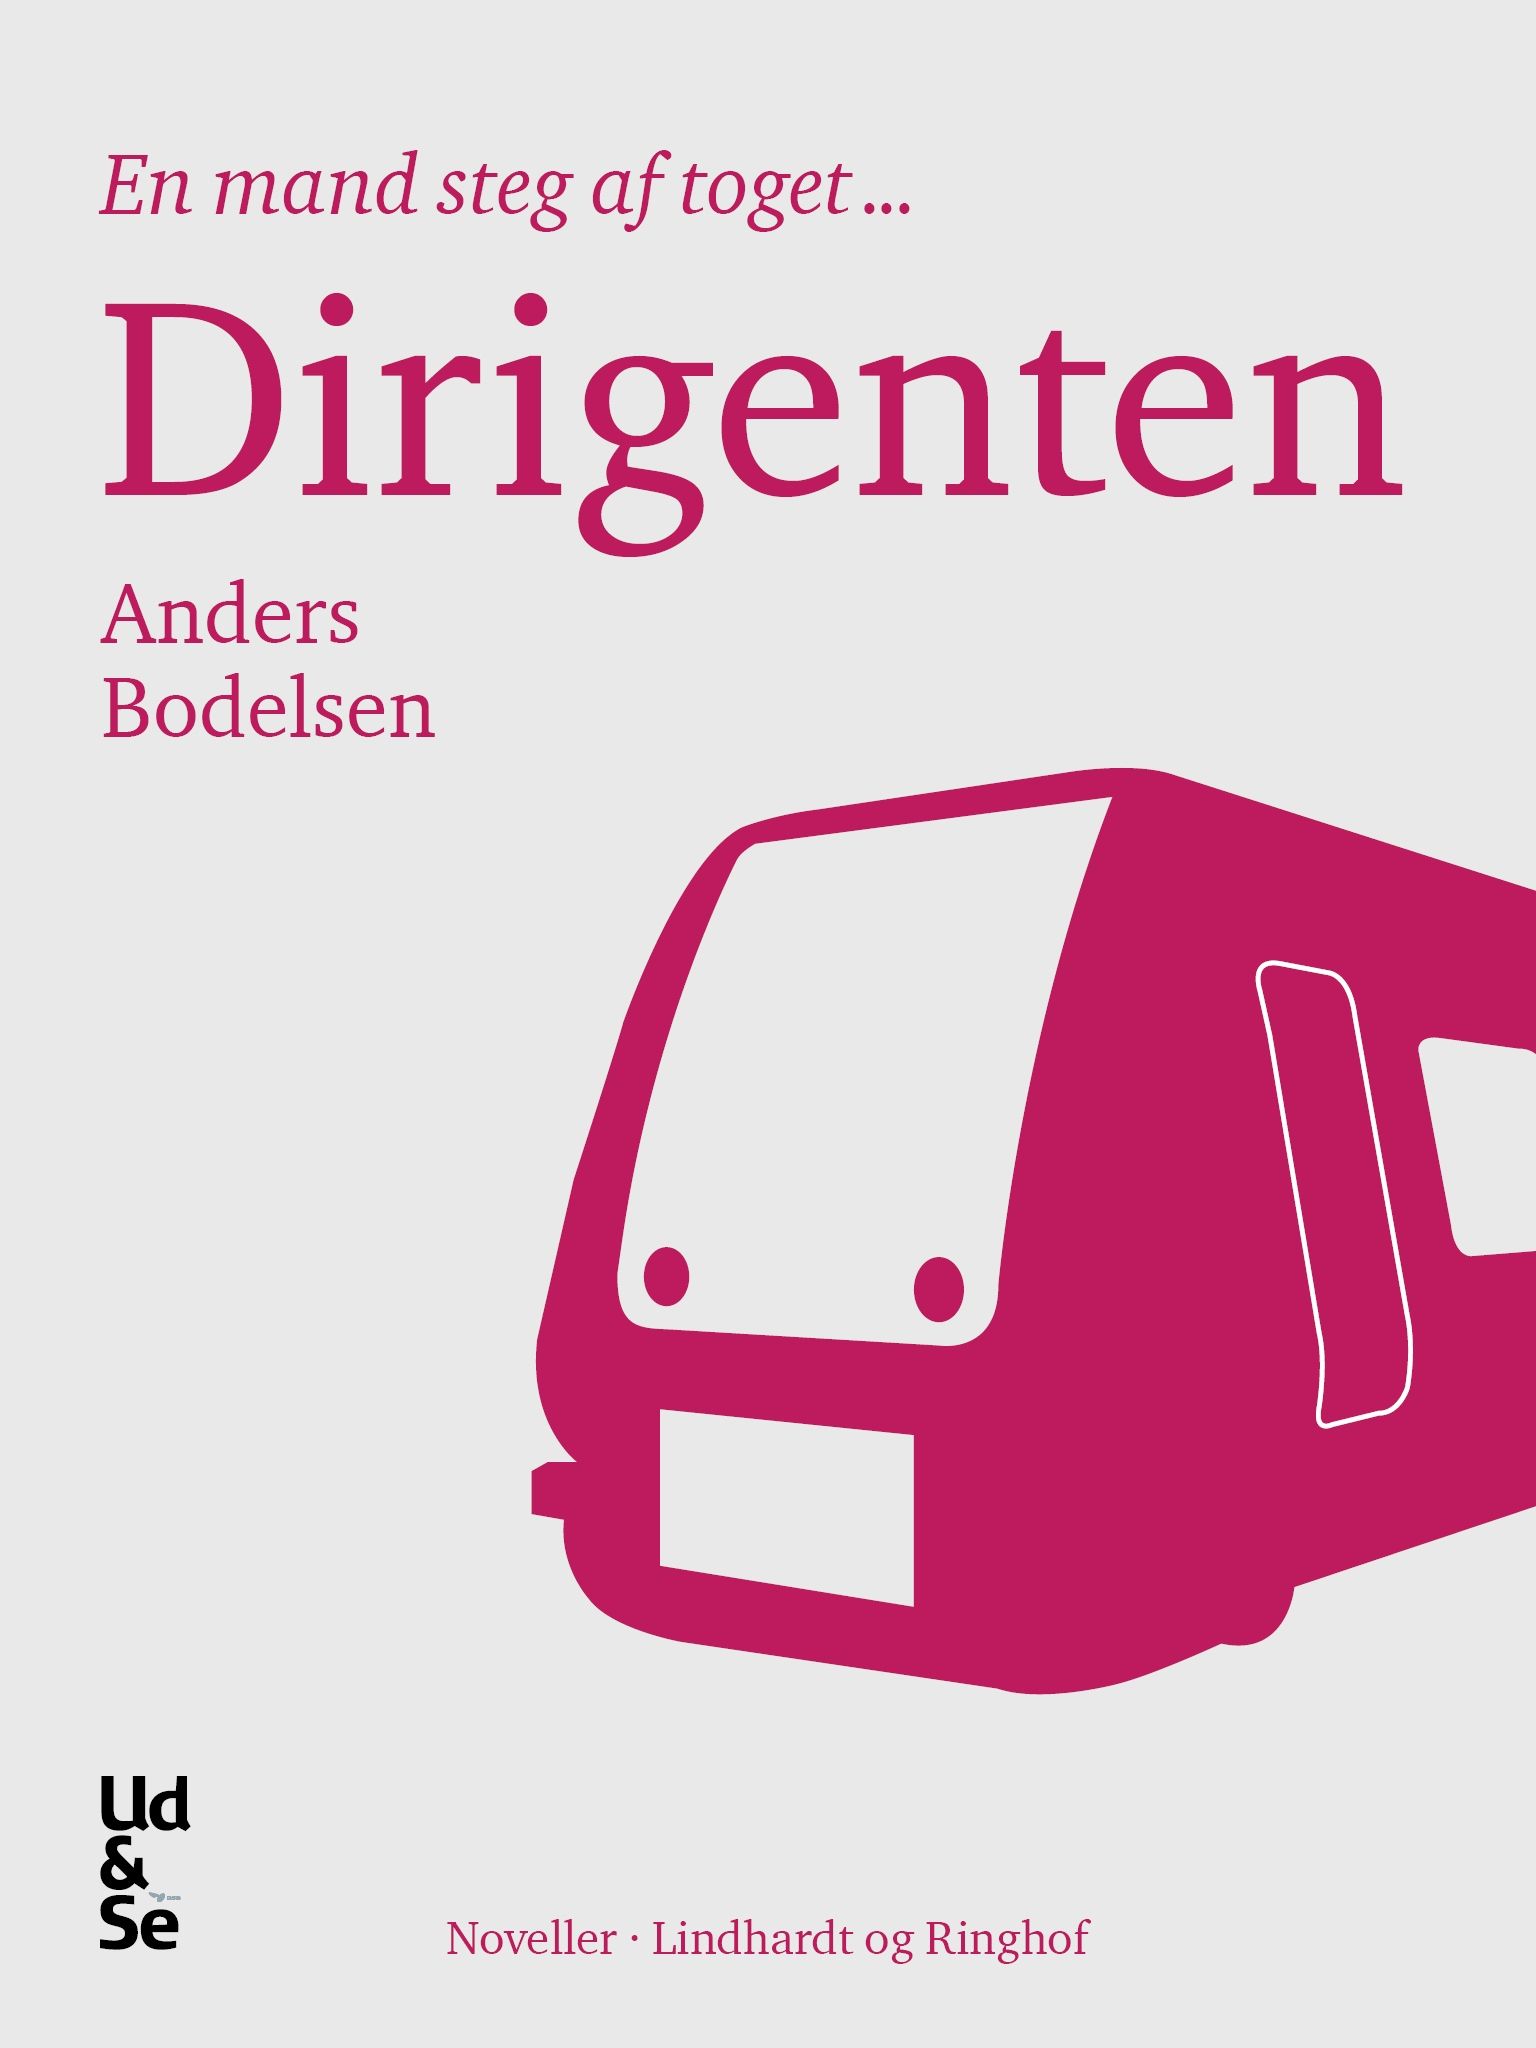 Dirigenten, e-bok av Anders Bodelsen